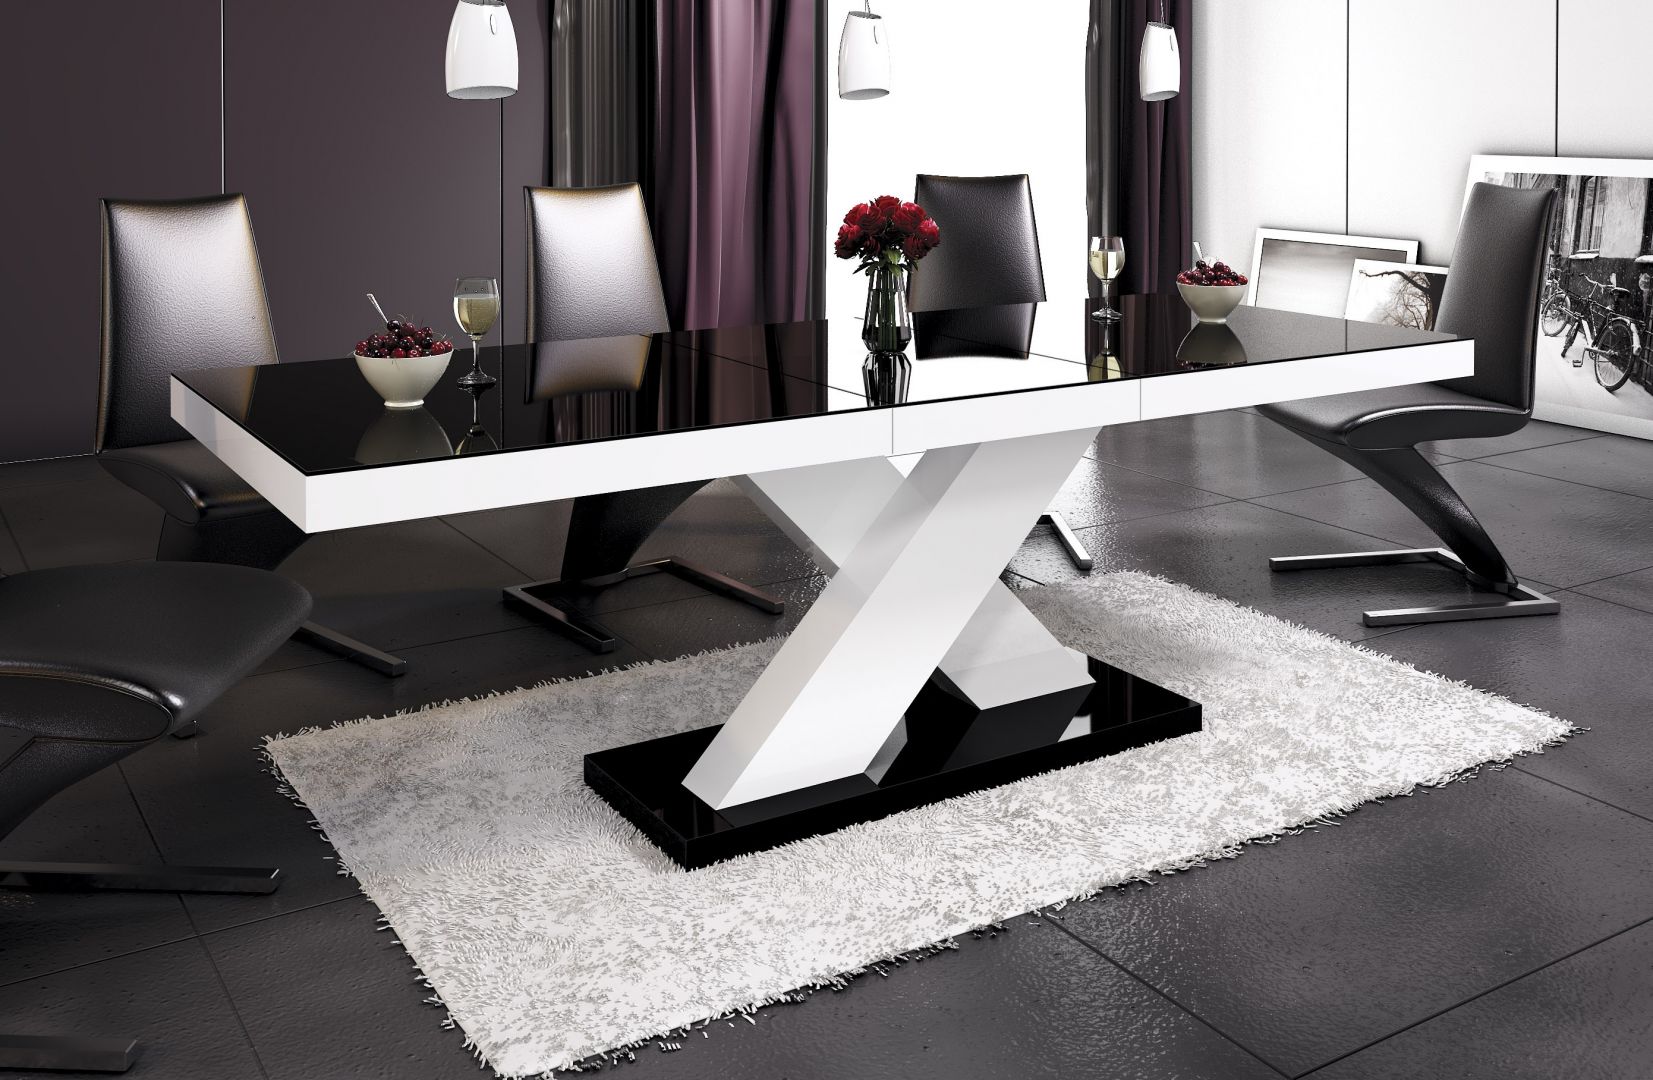 Stół Xenon wyróżnia się nowoczesną stylistyką. Fot. Hubertus 